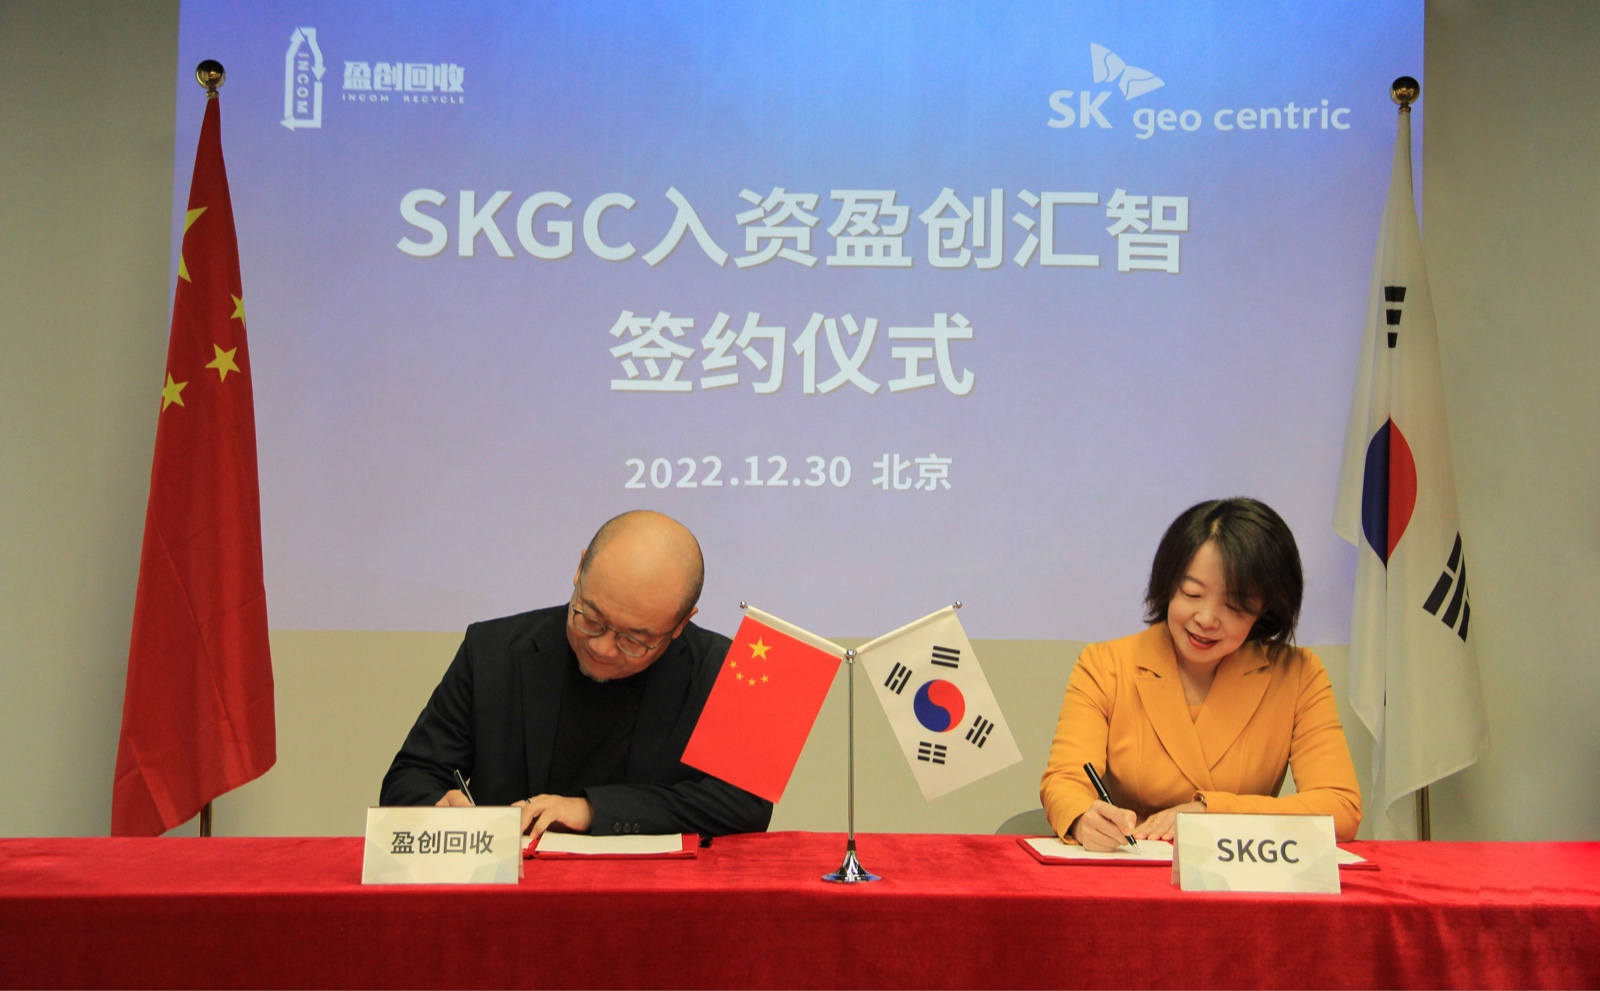 韩国SK geo centric与盈创回收在京举行入资签约仪式